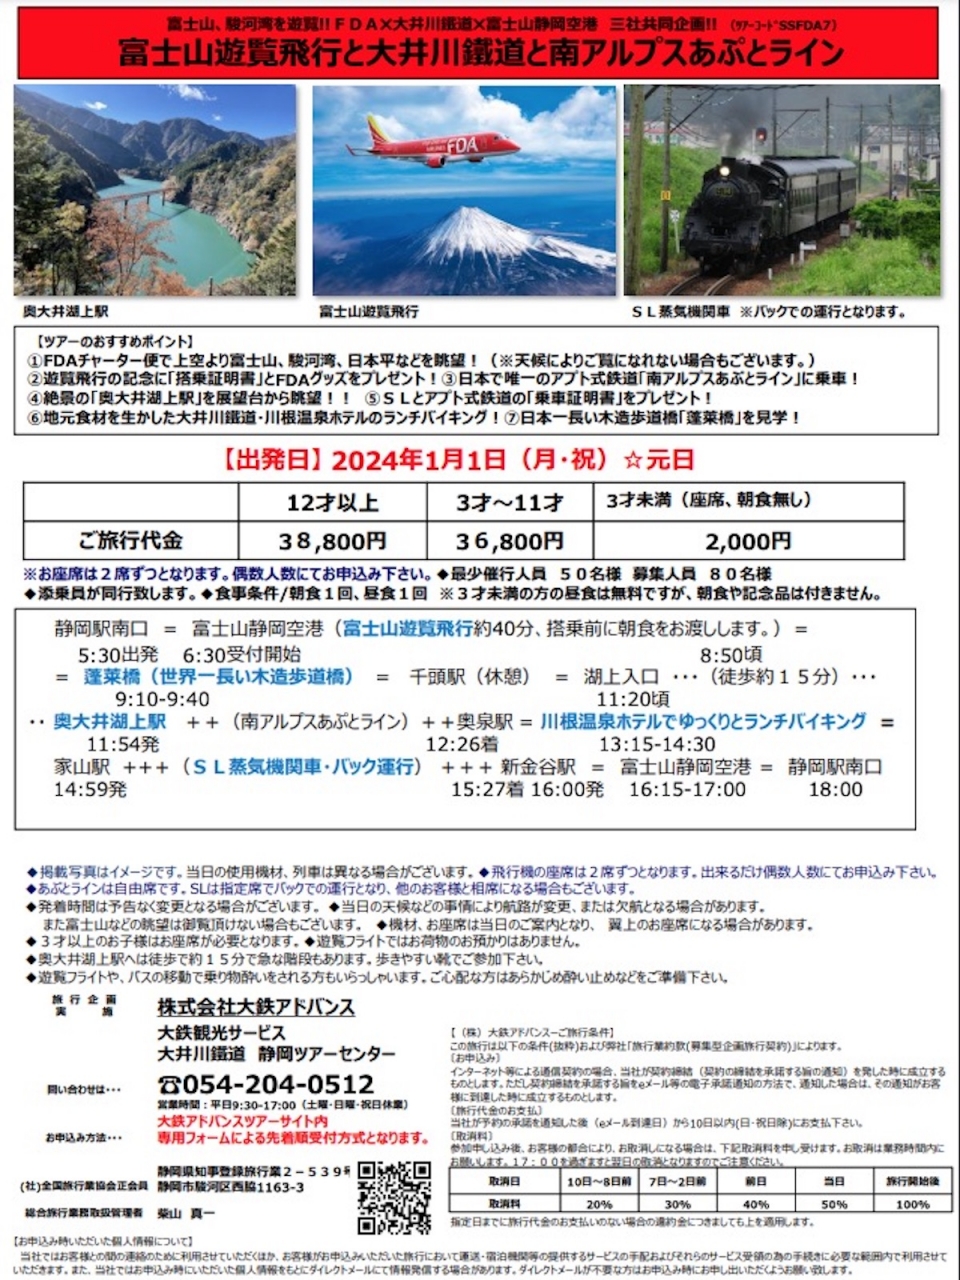 ニュース画像：ツアー行程等 - 「FDA富士山遊覧飛行と大井川鐵道を楽しむツアー、2024元旦も開催へ」